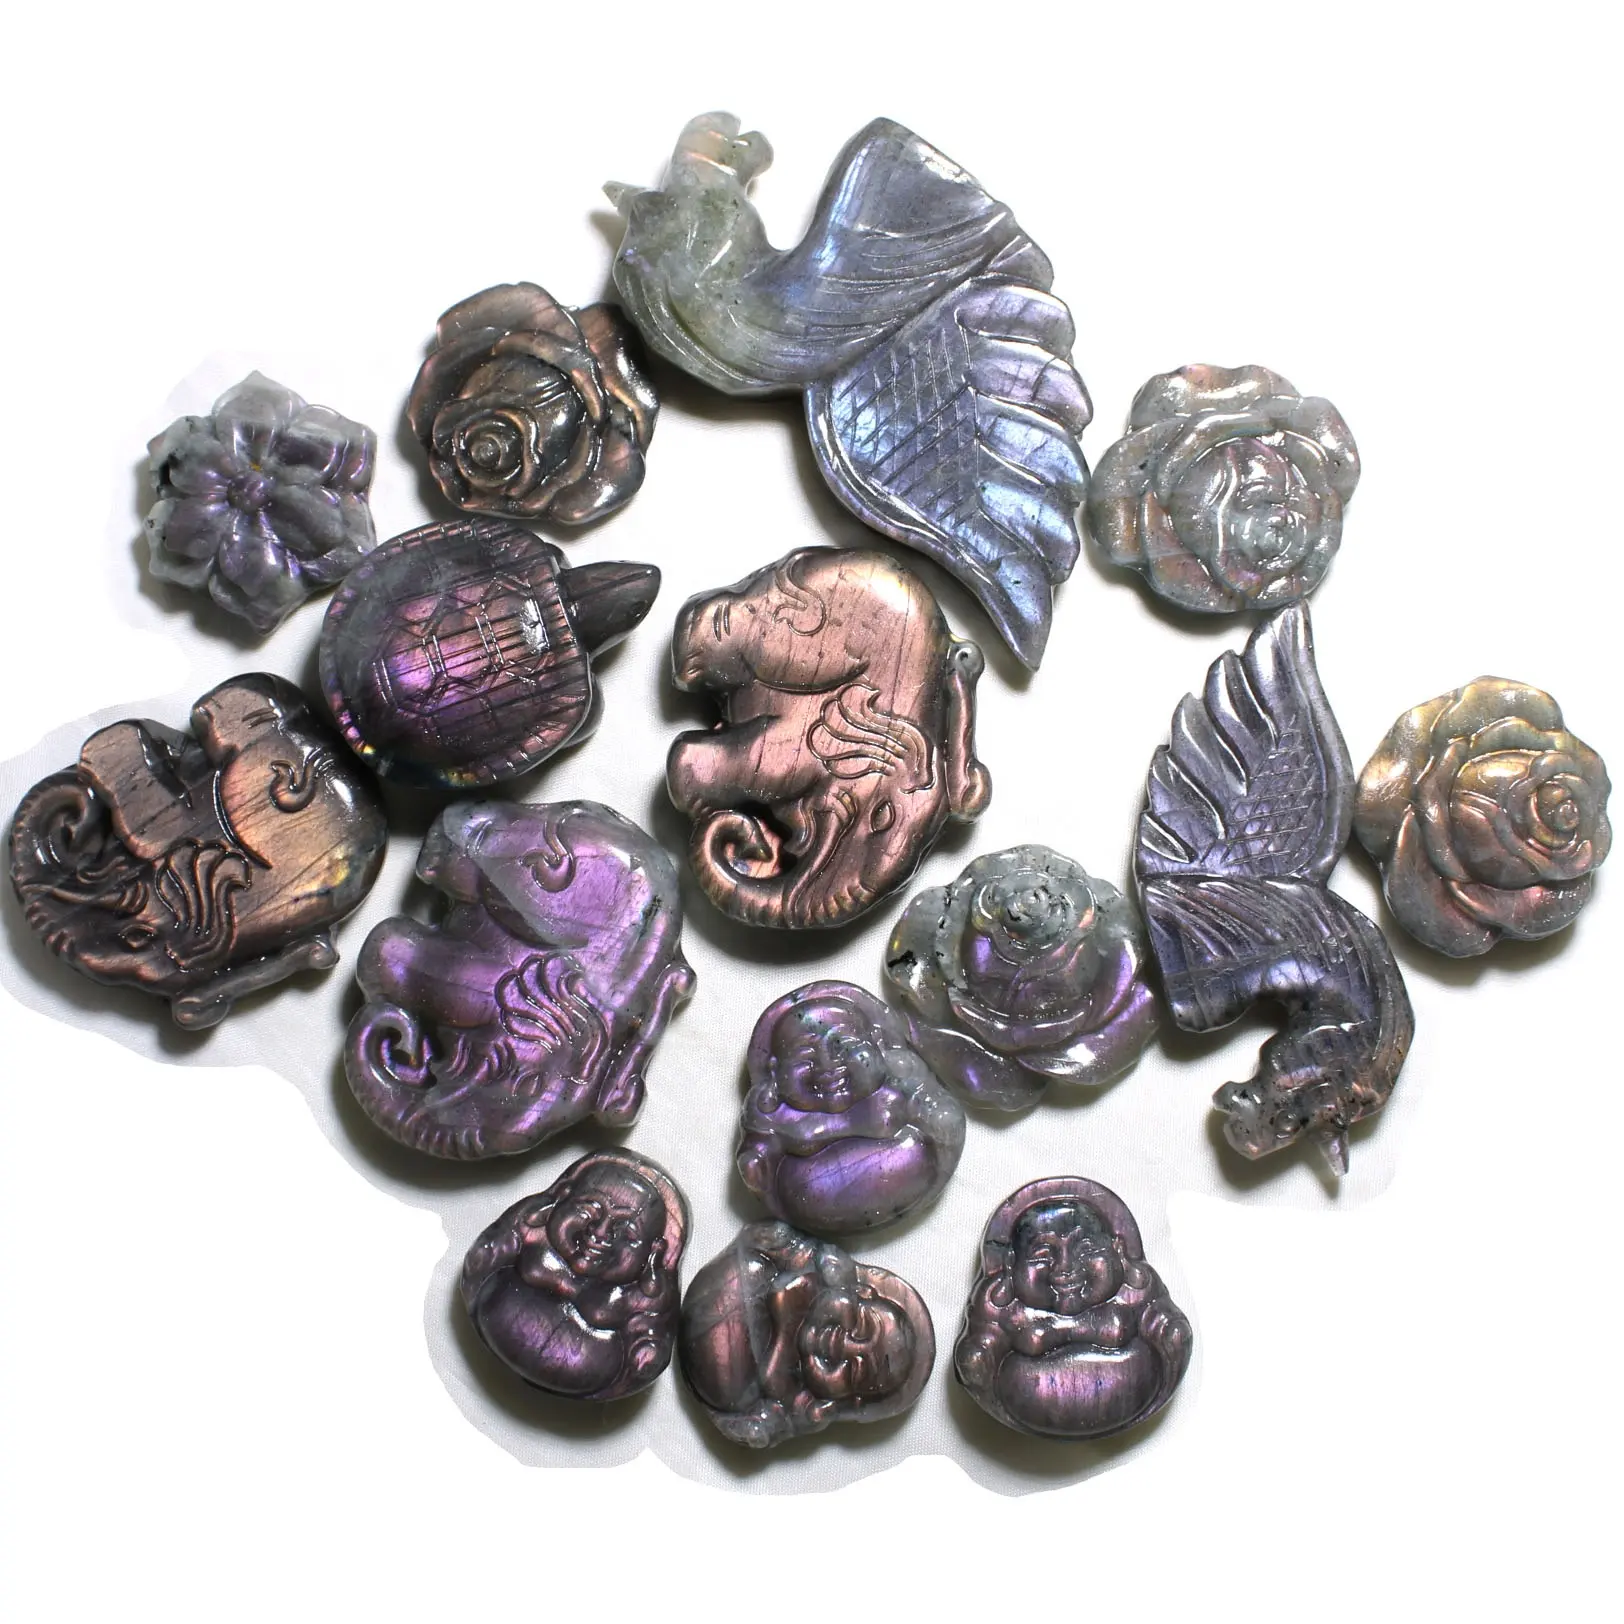 Hand geschnitzte viele geformte natürliche rosa lila Flash Labradorit Stein kristalls chnitzereien